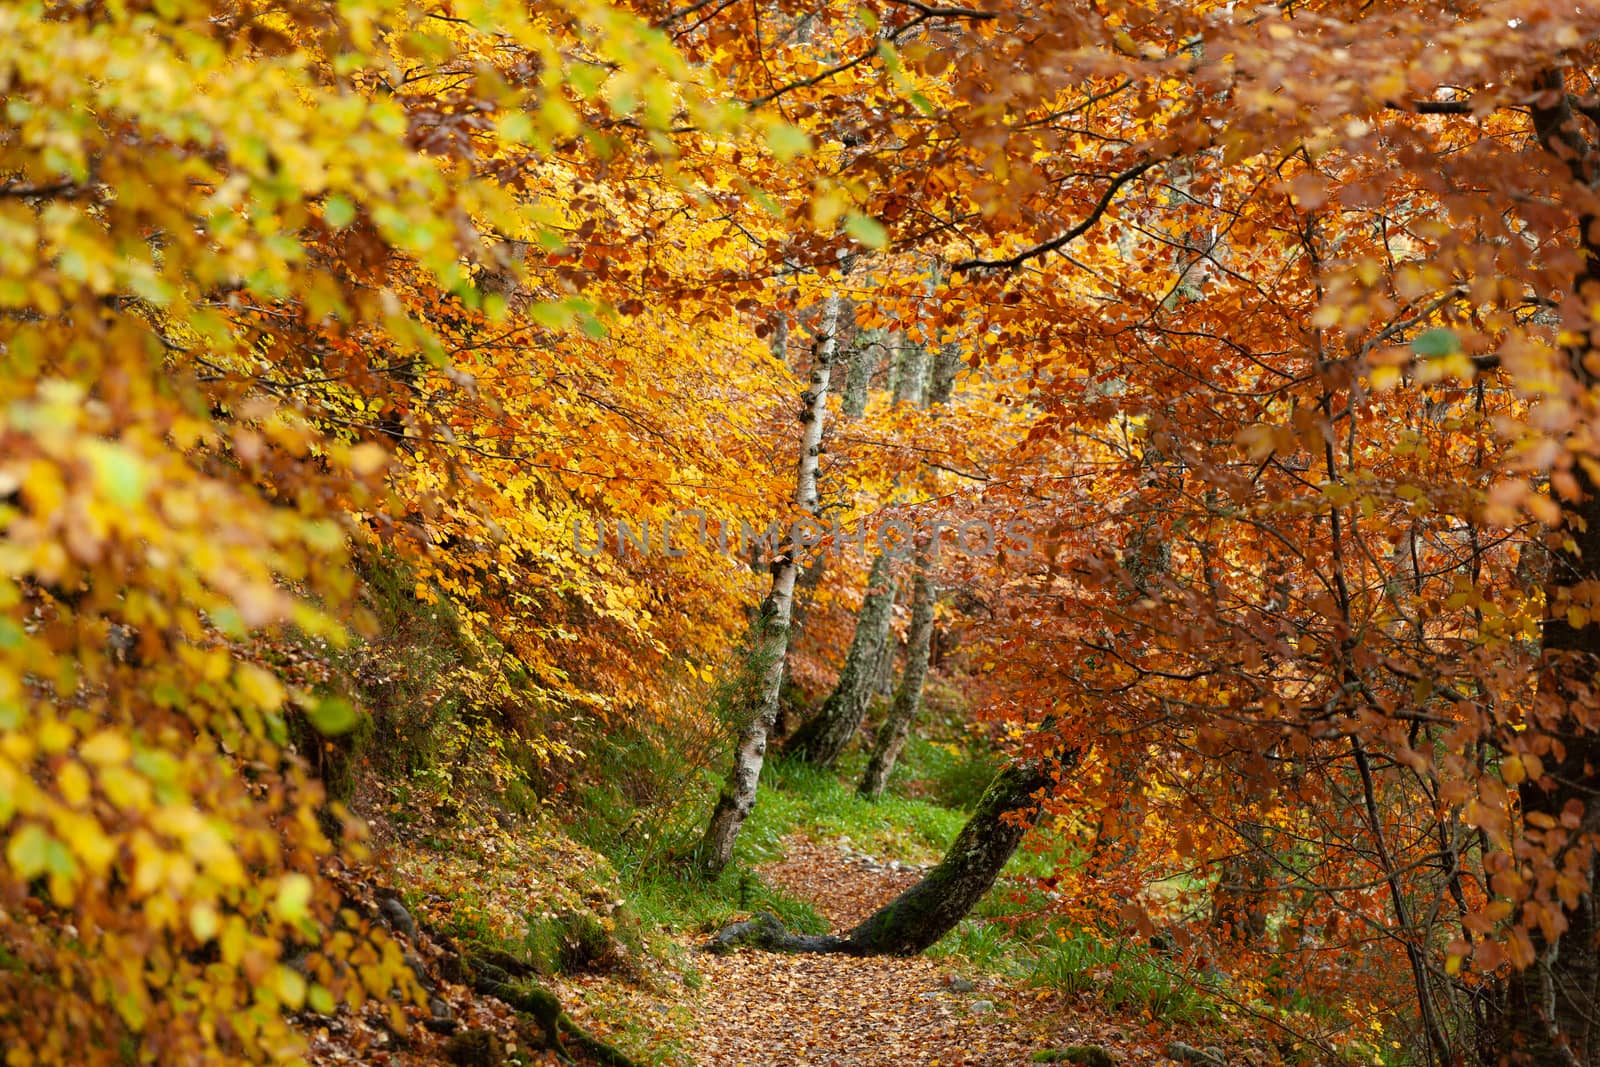 Path in Autumn forest, Loch Insh, Kincraig, Scotland, UK by vlad-m